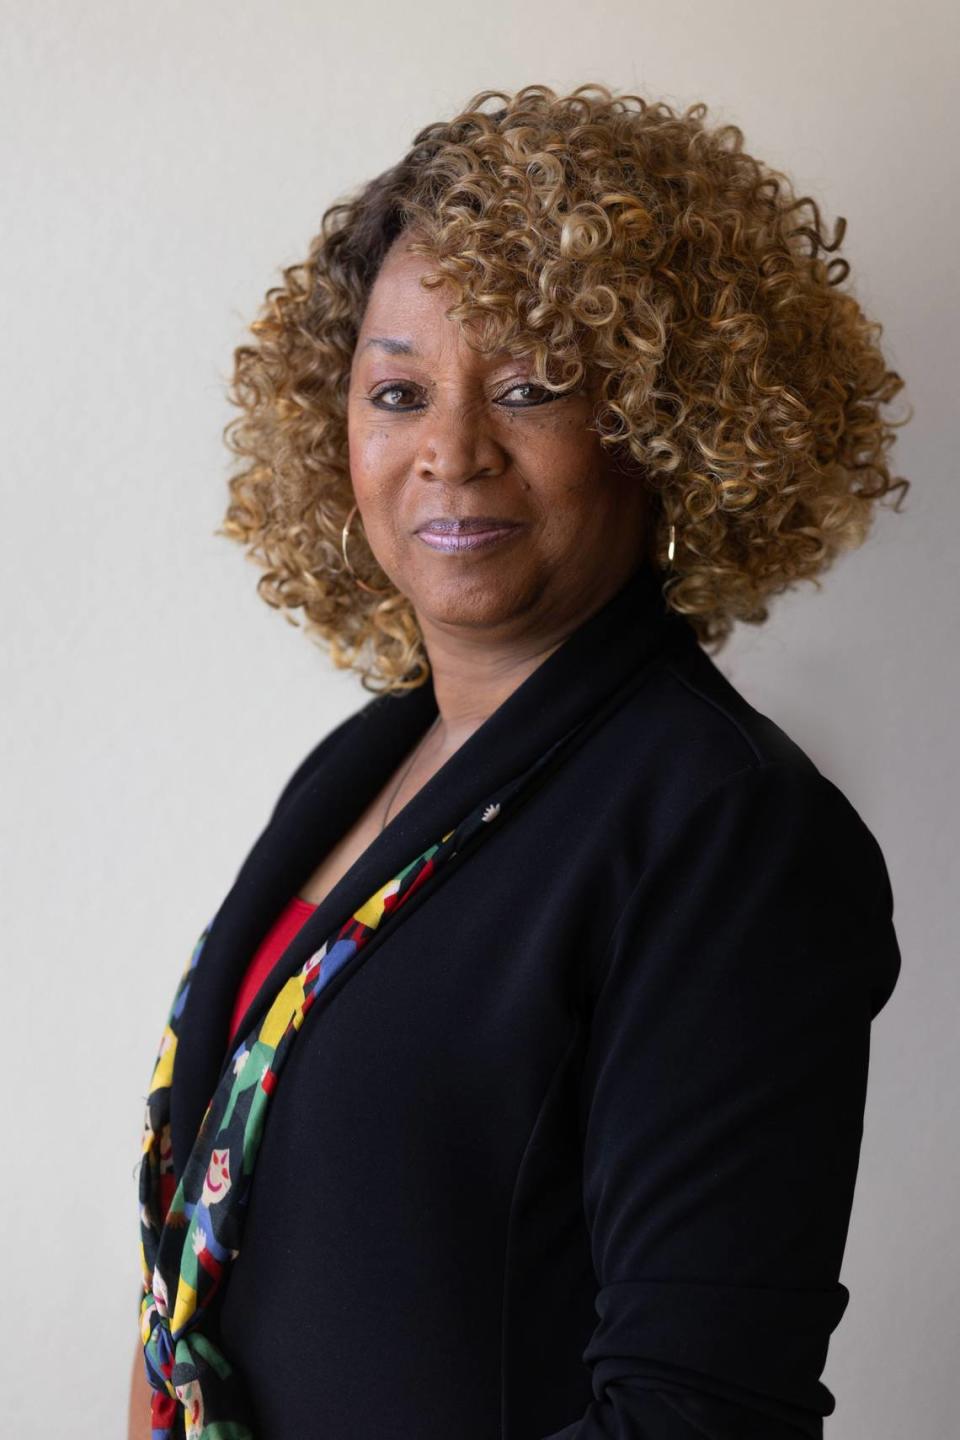 Kim E. Armstrong, presidenta del Clovis Community College desde el 3 de enero de 2023, se traslada ahora al Fresno City College como presidenta interina.